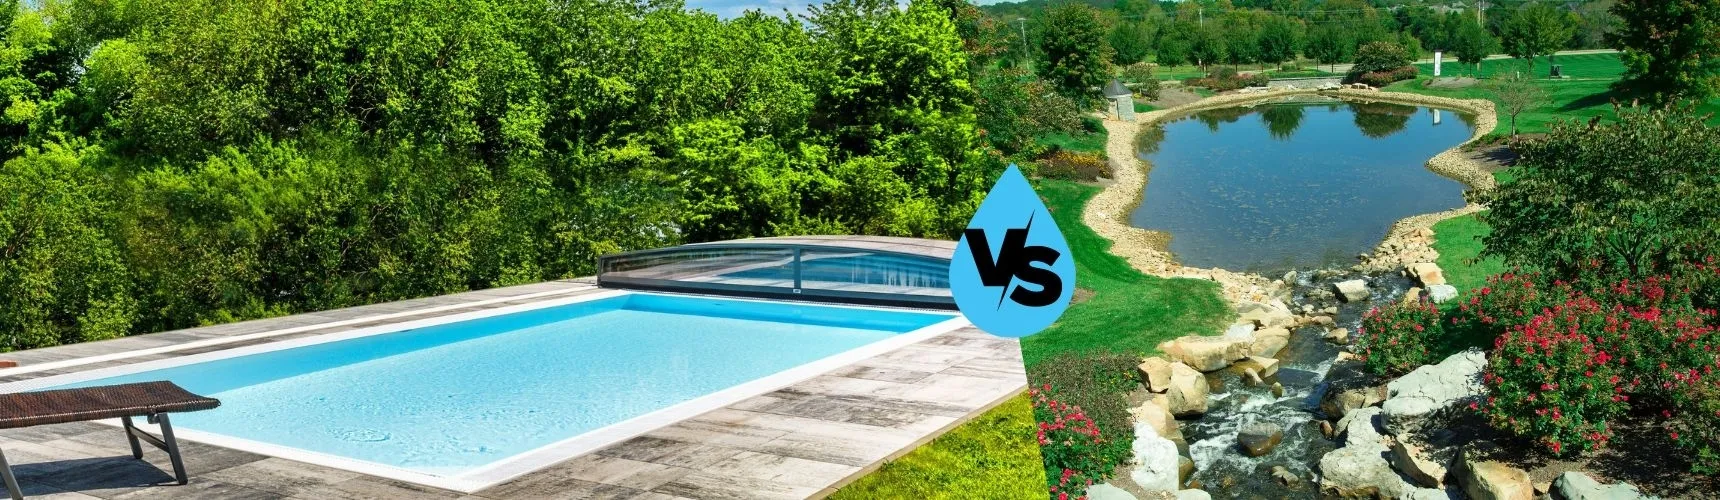 Koupací jezírko vs. bazén: Co je lepší?